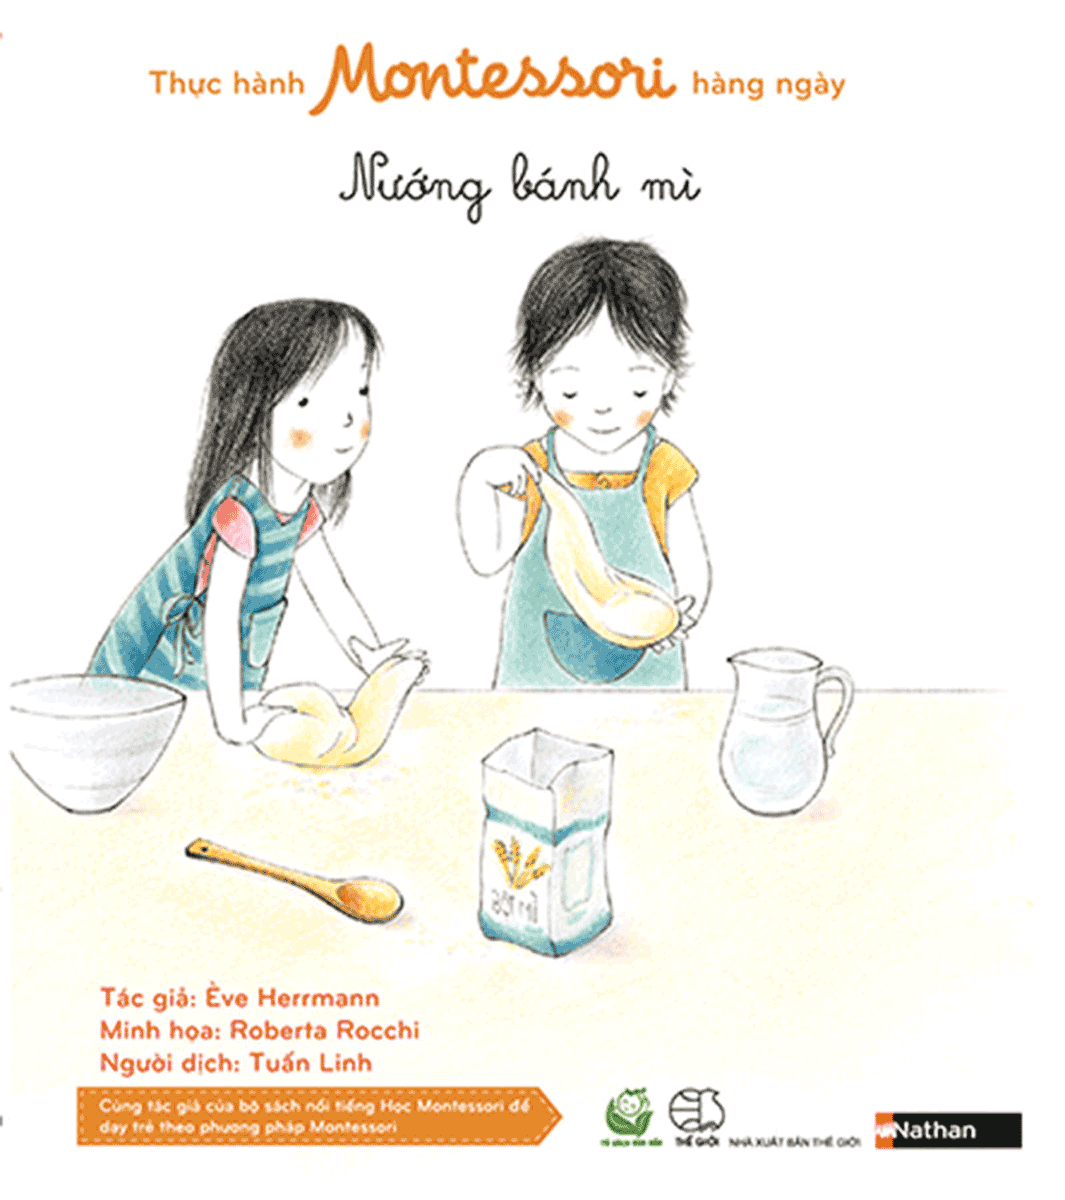 Thực Hành Montessori Hàng Ngày - Nướng Bánh Mỳ